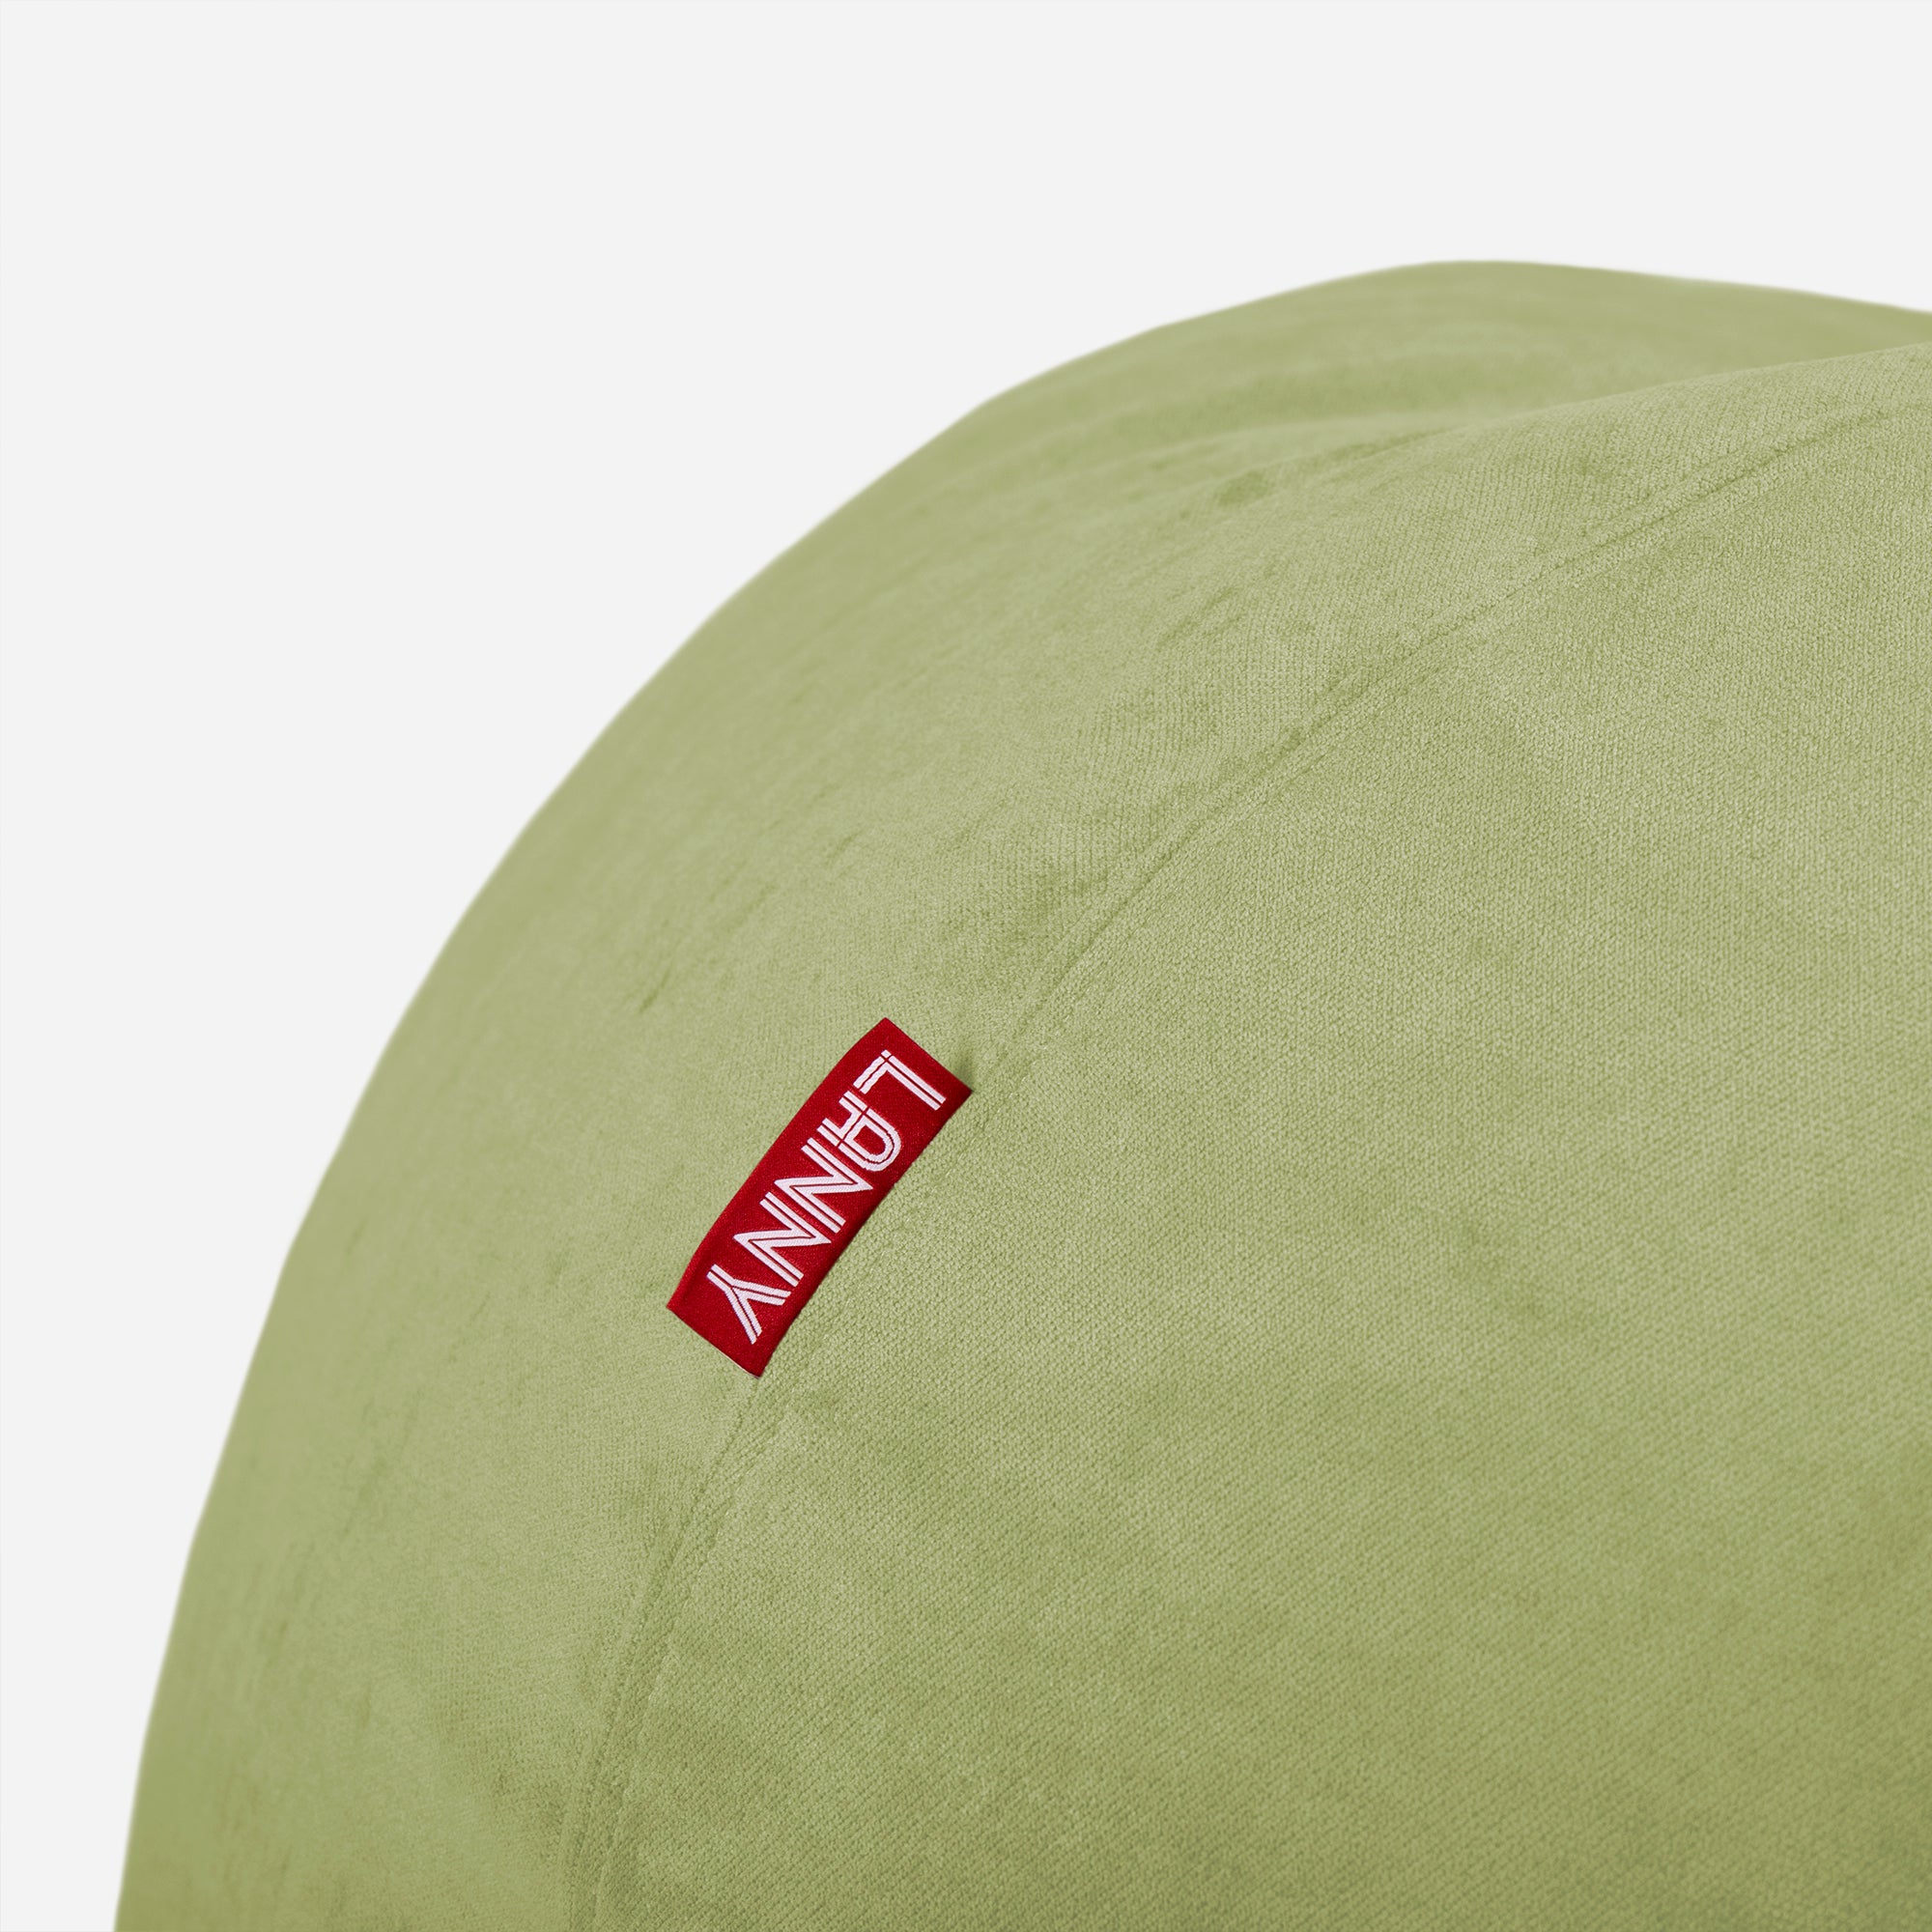 Sphere Aldo Lime Bean bag